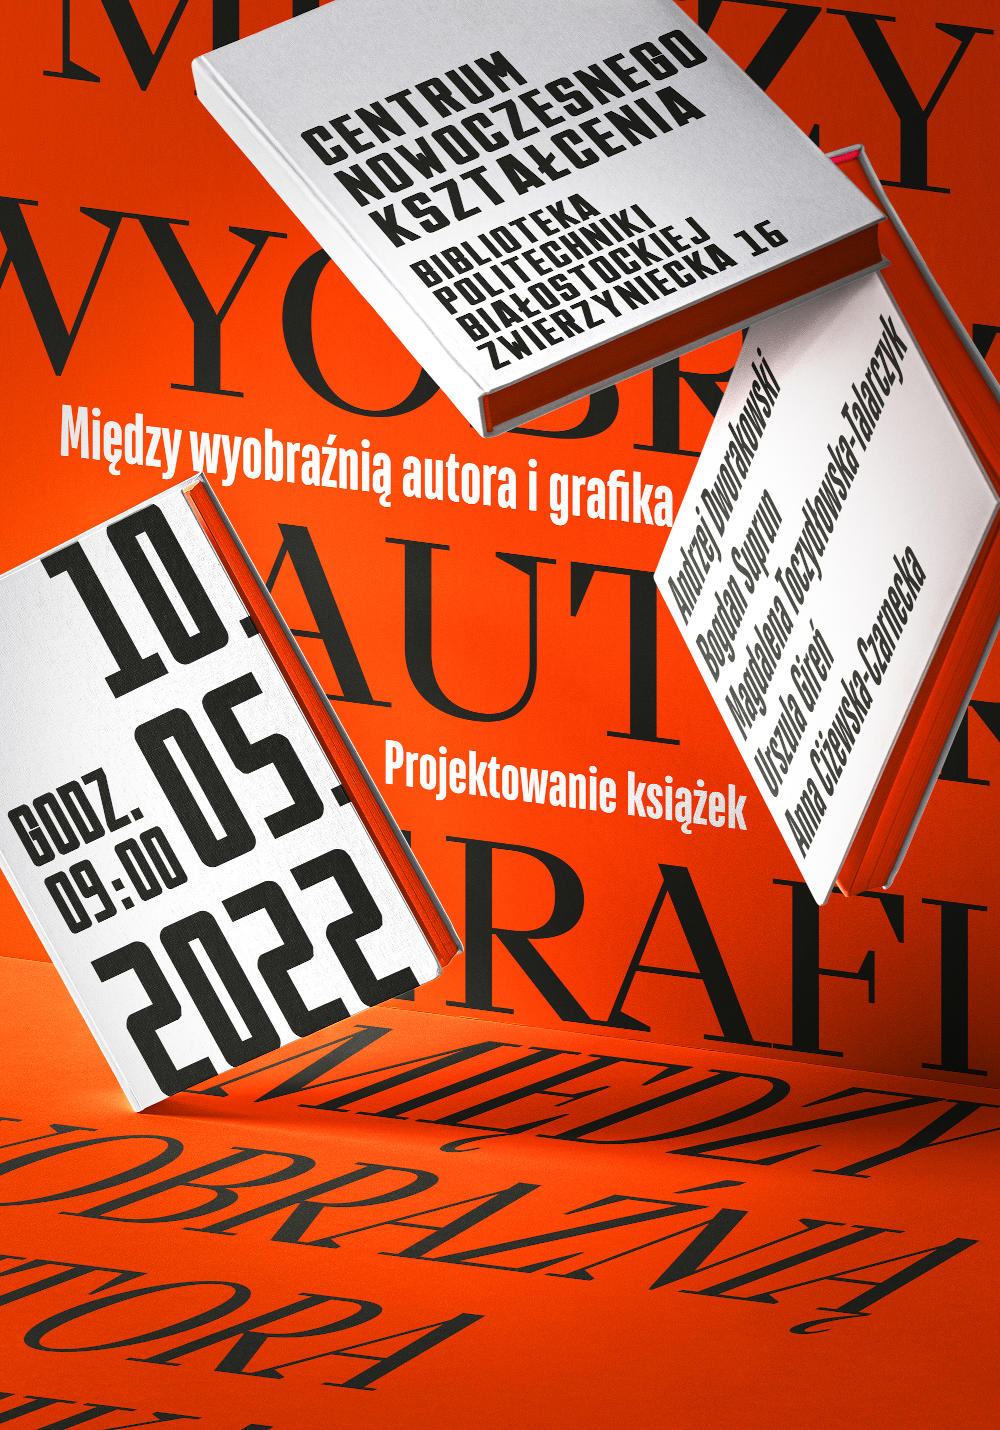 Plakat promujący wystawę o tytule między wyobraźnią autora i grafika